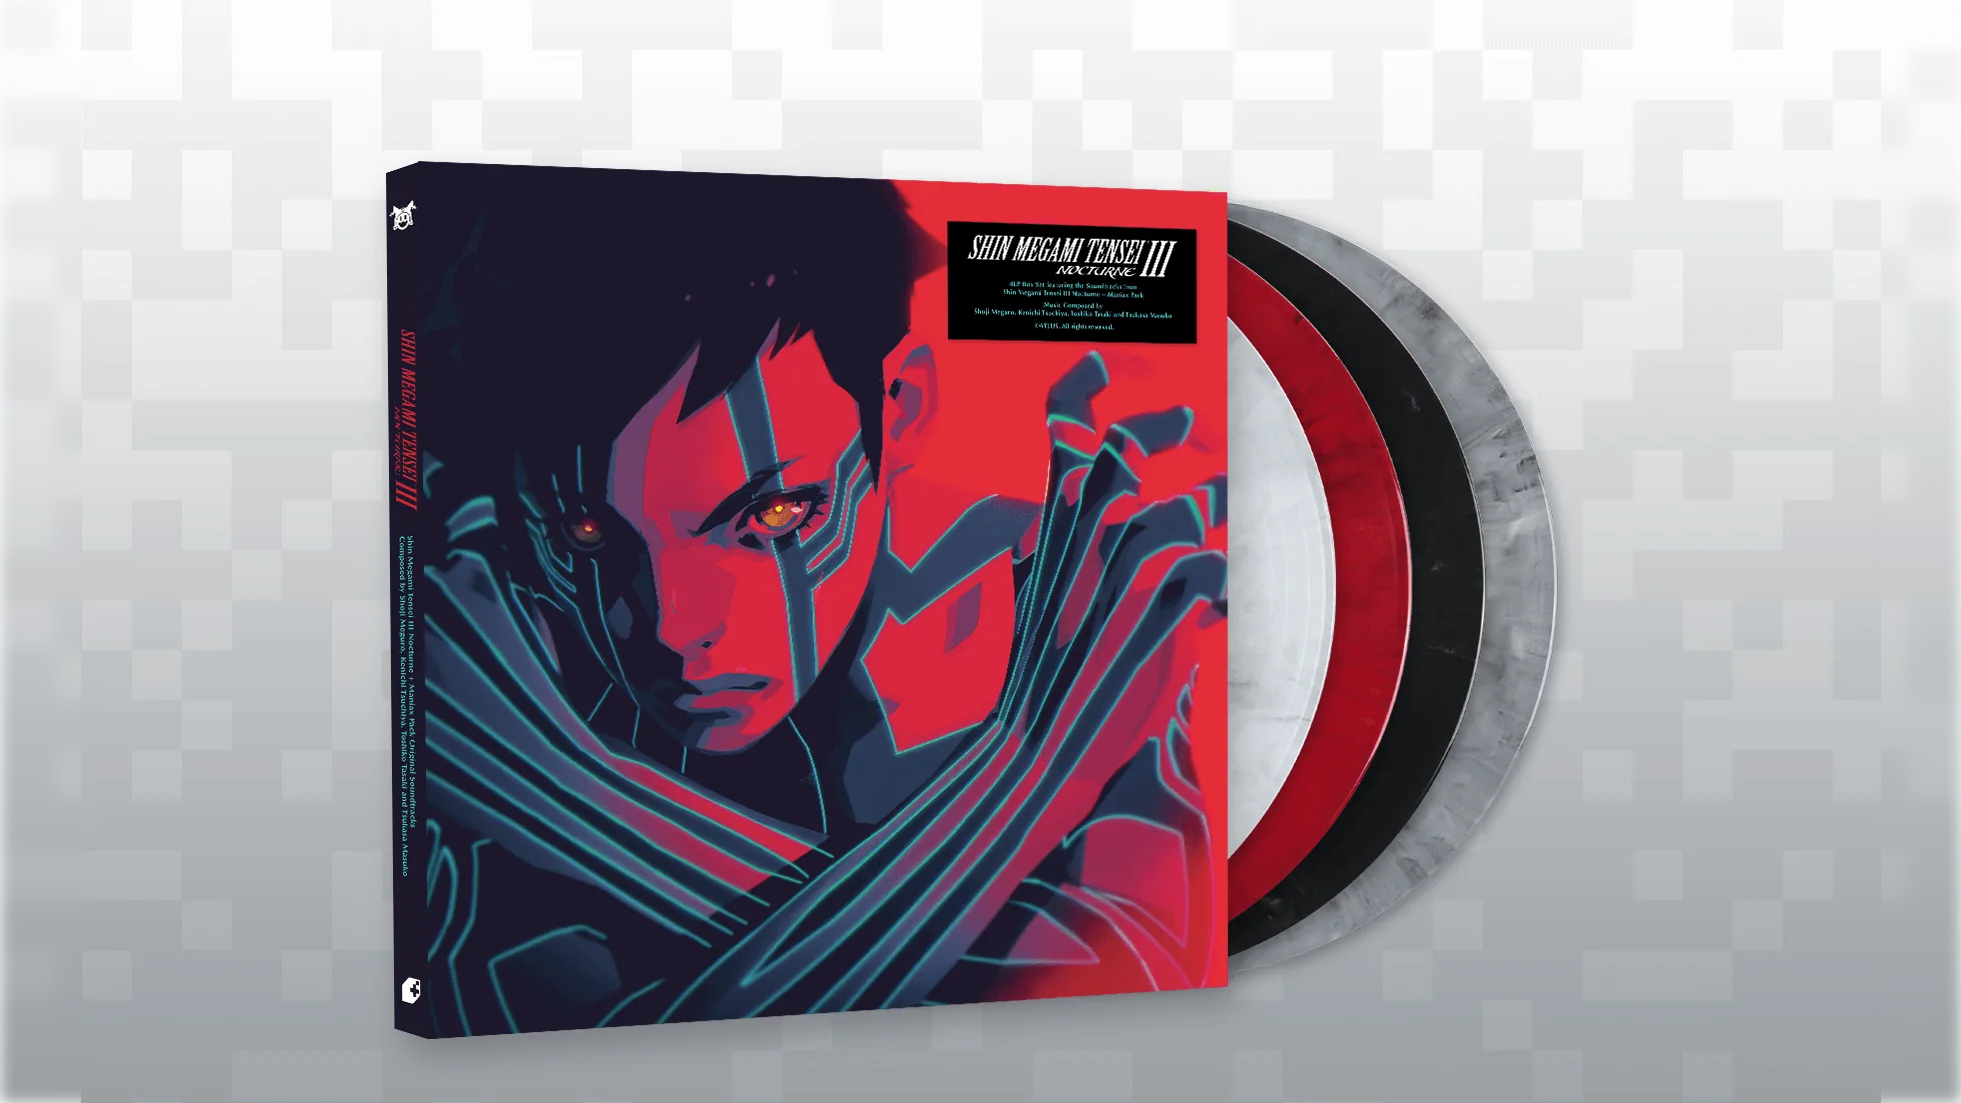 #Der fantastische Soundtrack von Shin Megami Tensei III Nocturne erscheint auf Vinyl